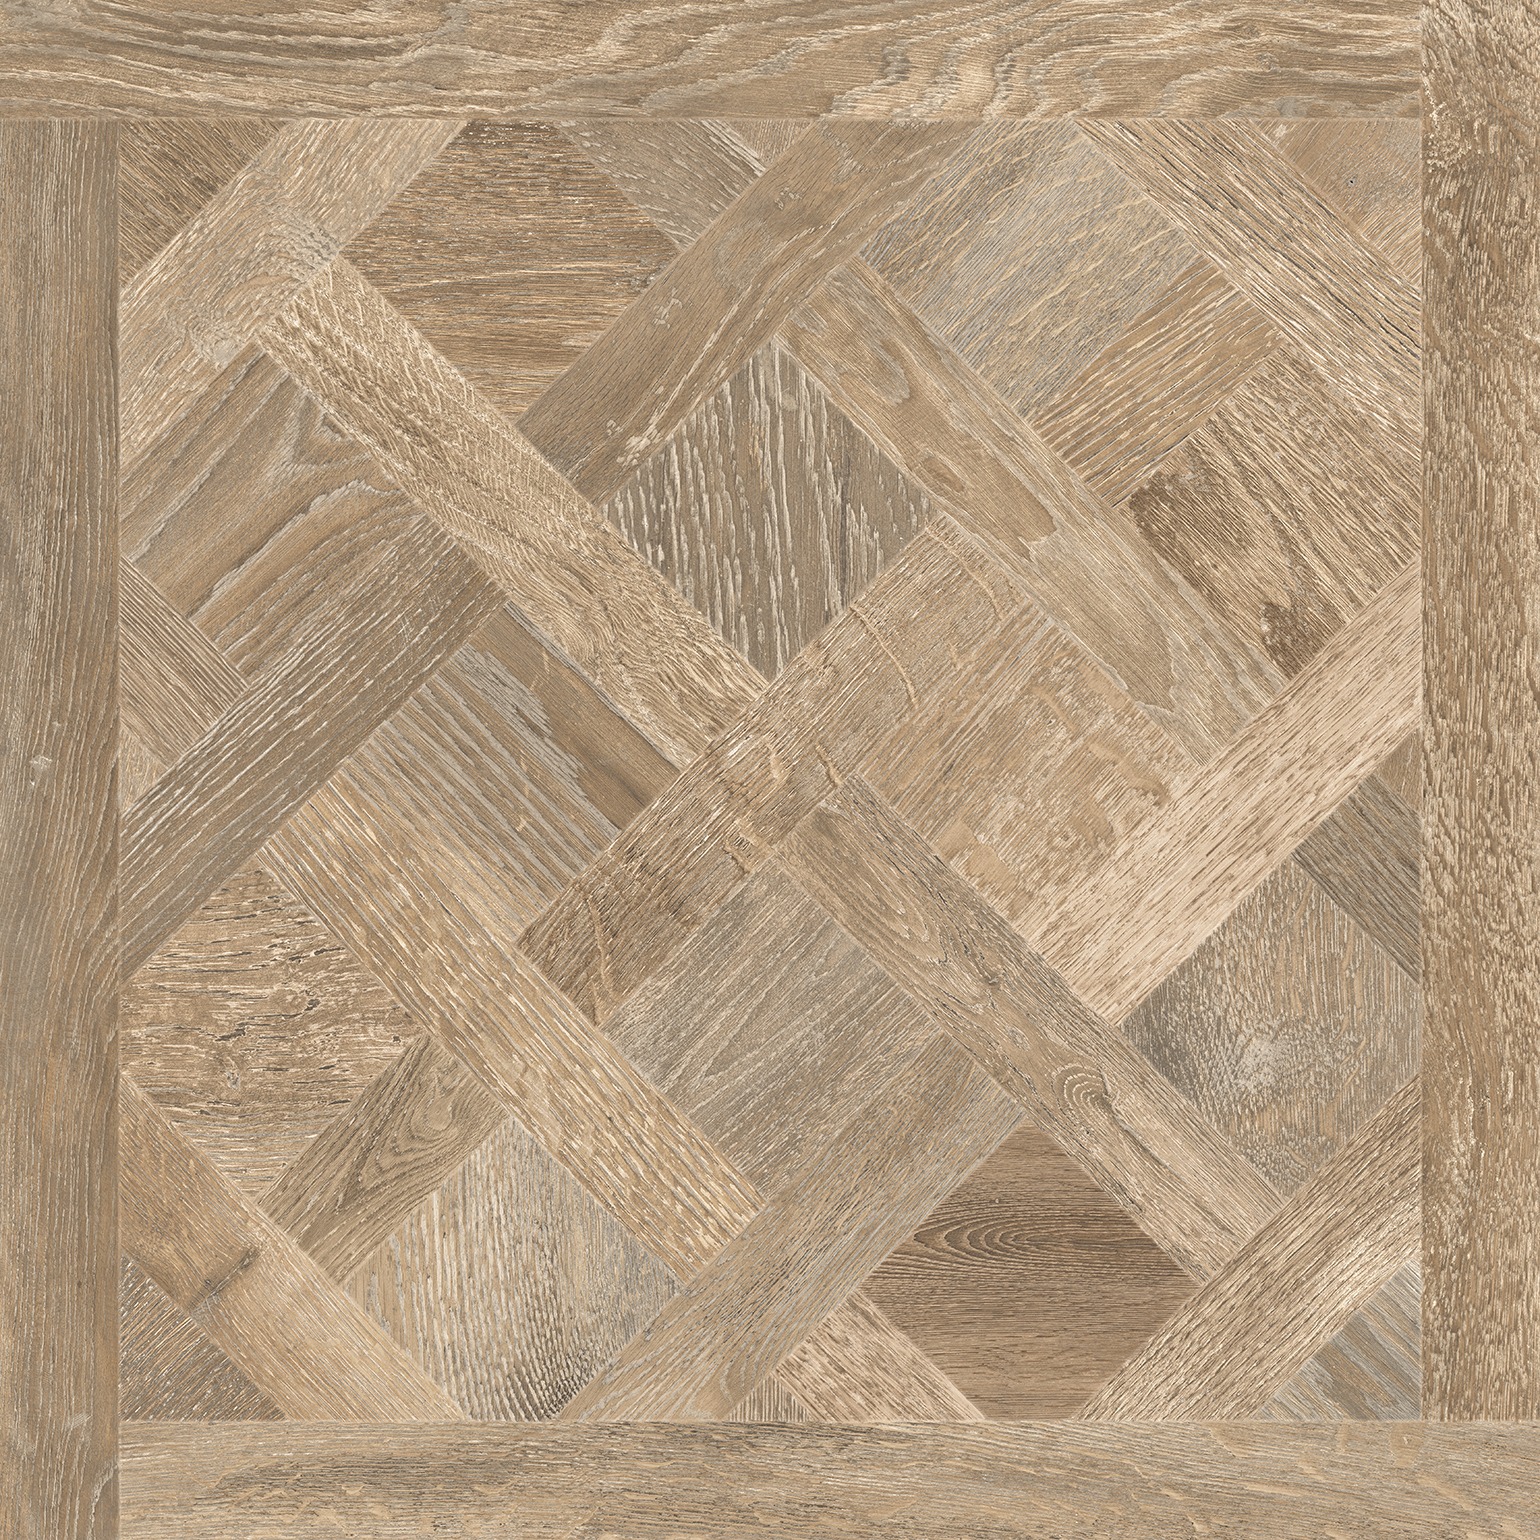 Opus 32x32 Amber Décor Wood Look Porcelain Tile